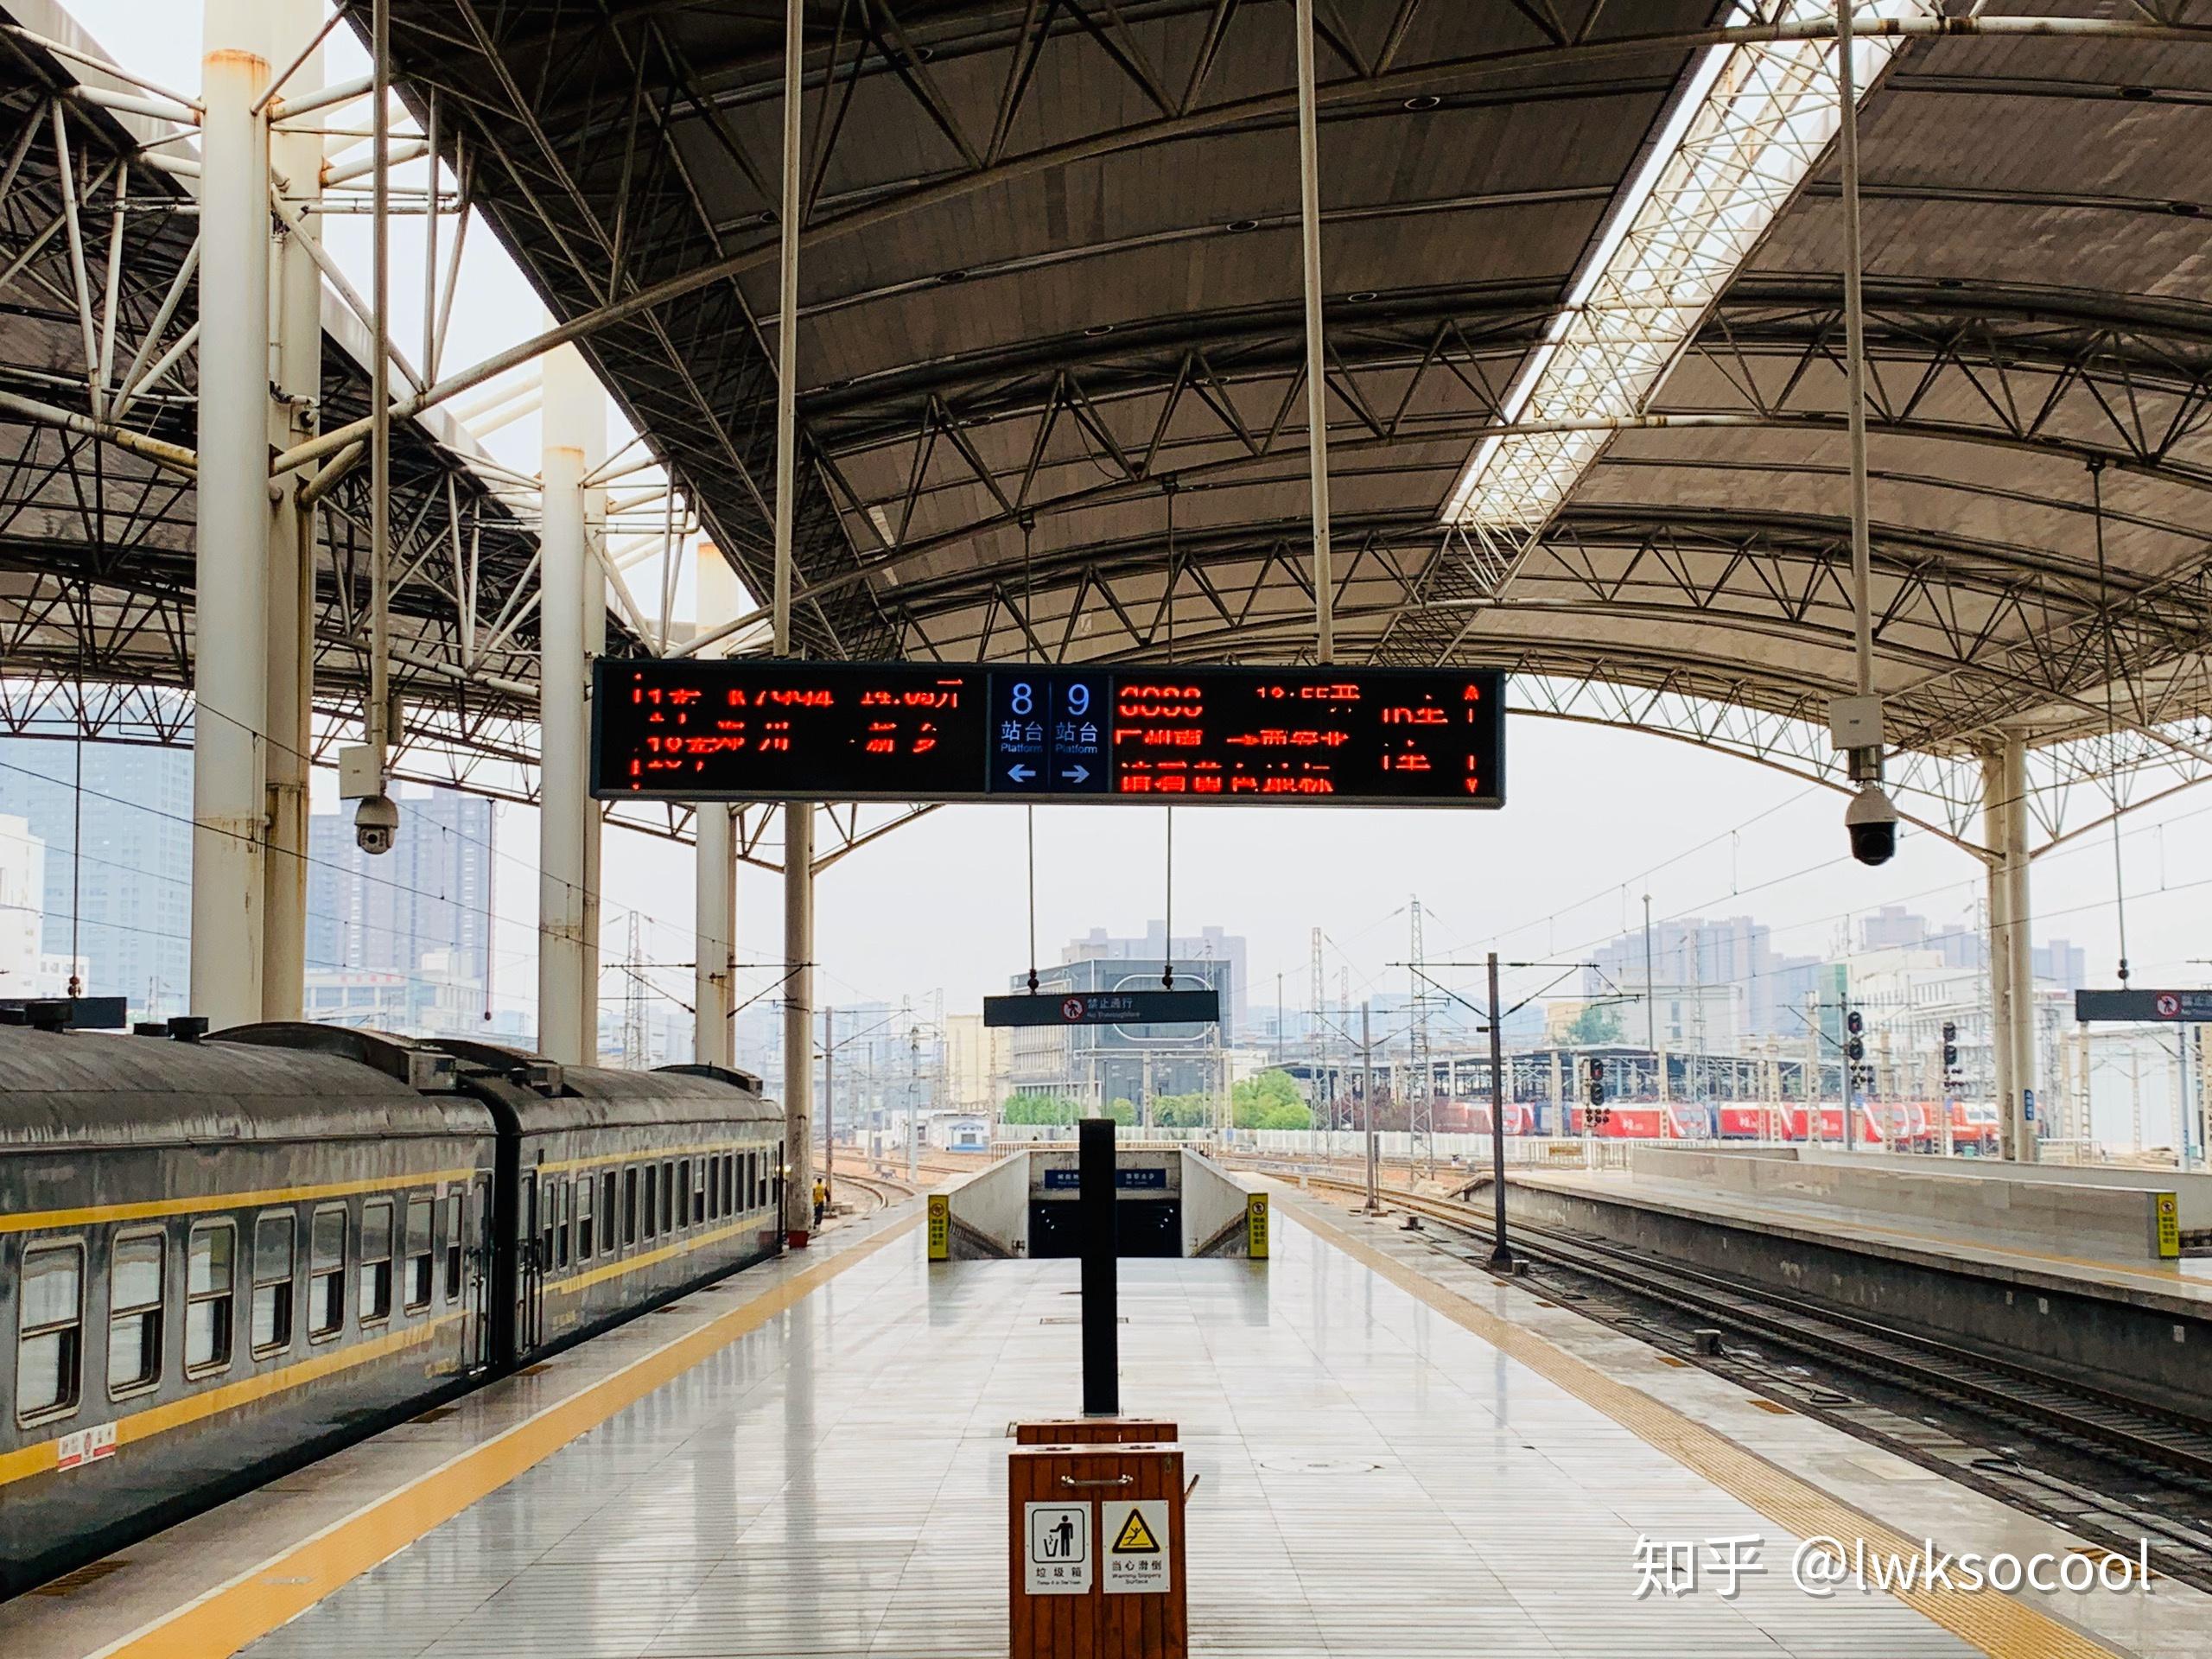 检票在第三,四候车室,列车停靠郑州站9站台12点49分,g571正点到达郑州